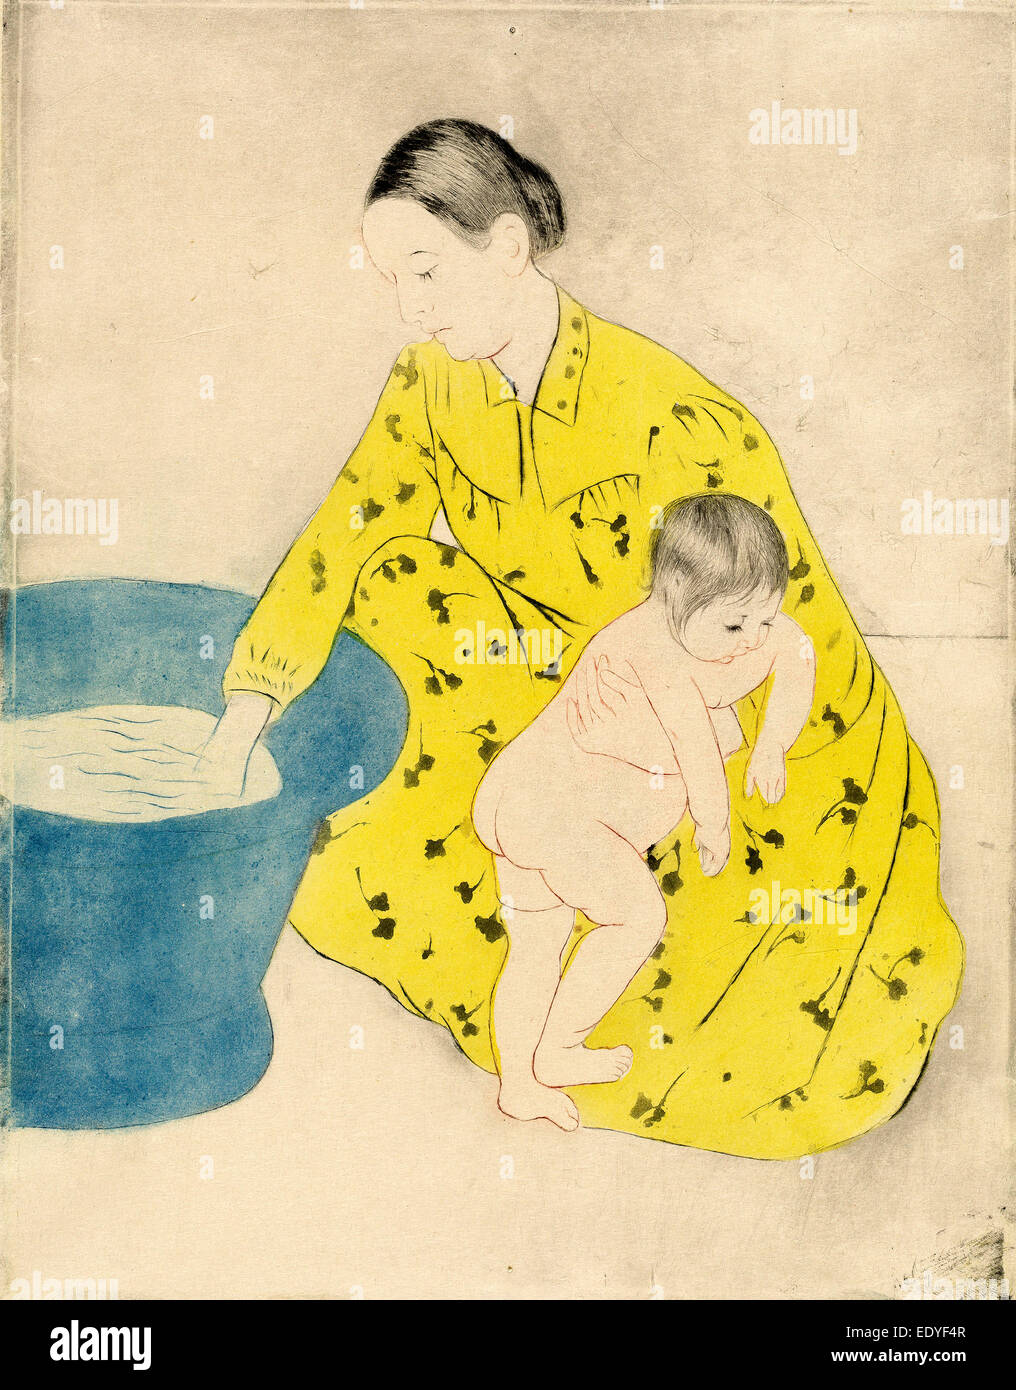 Mary Cassatt (américain, 1844 - 1926), le bain, 1890-1891, la couleur pointe sèche, aquatinte et soft-terrain gravure sur vélin japonais Banque D'Images